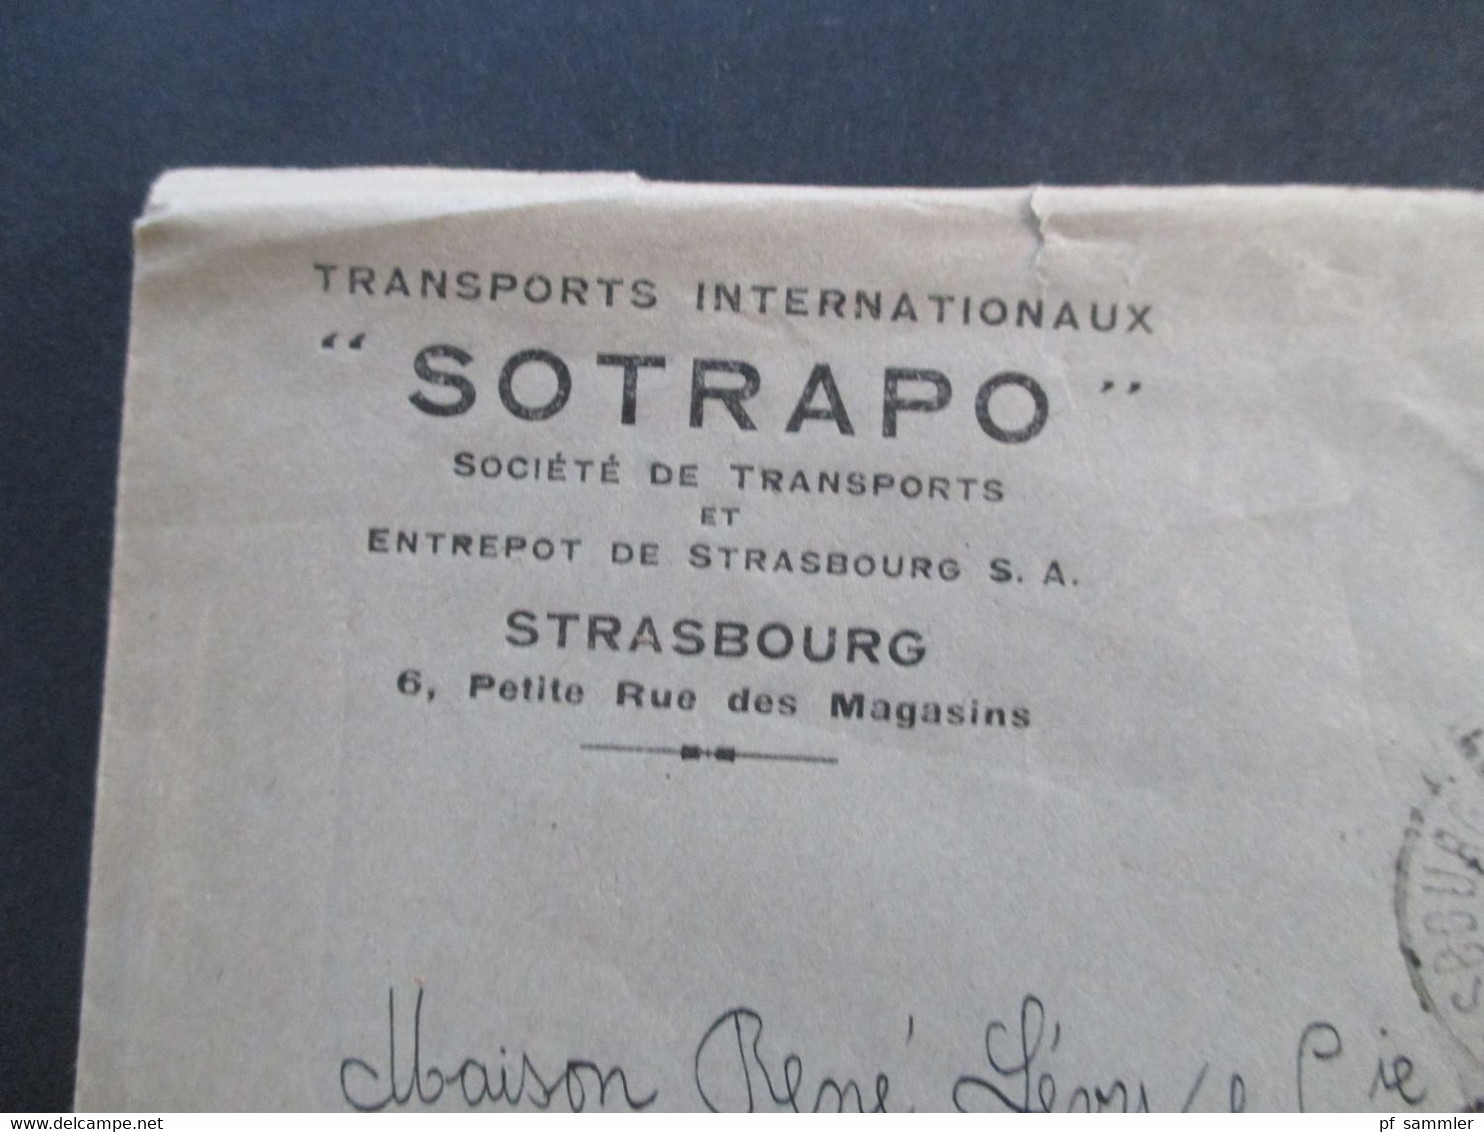 Frankreich 1925 / 38 Freimarken Louis Pasteur Nr. 193 Und Berthelot Nr. 223 Vom Oberrand Transport Internationaux Sotrap - Covers & Documents